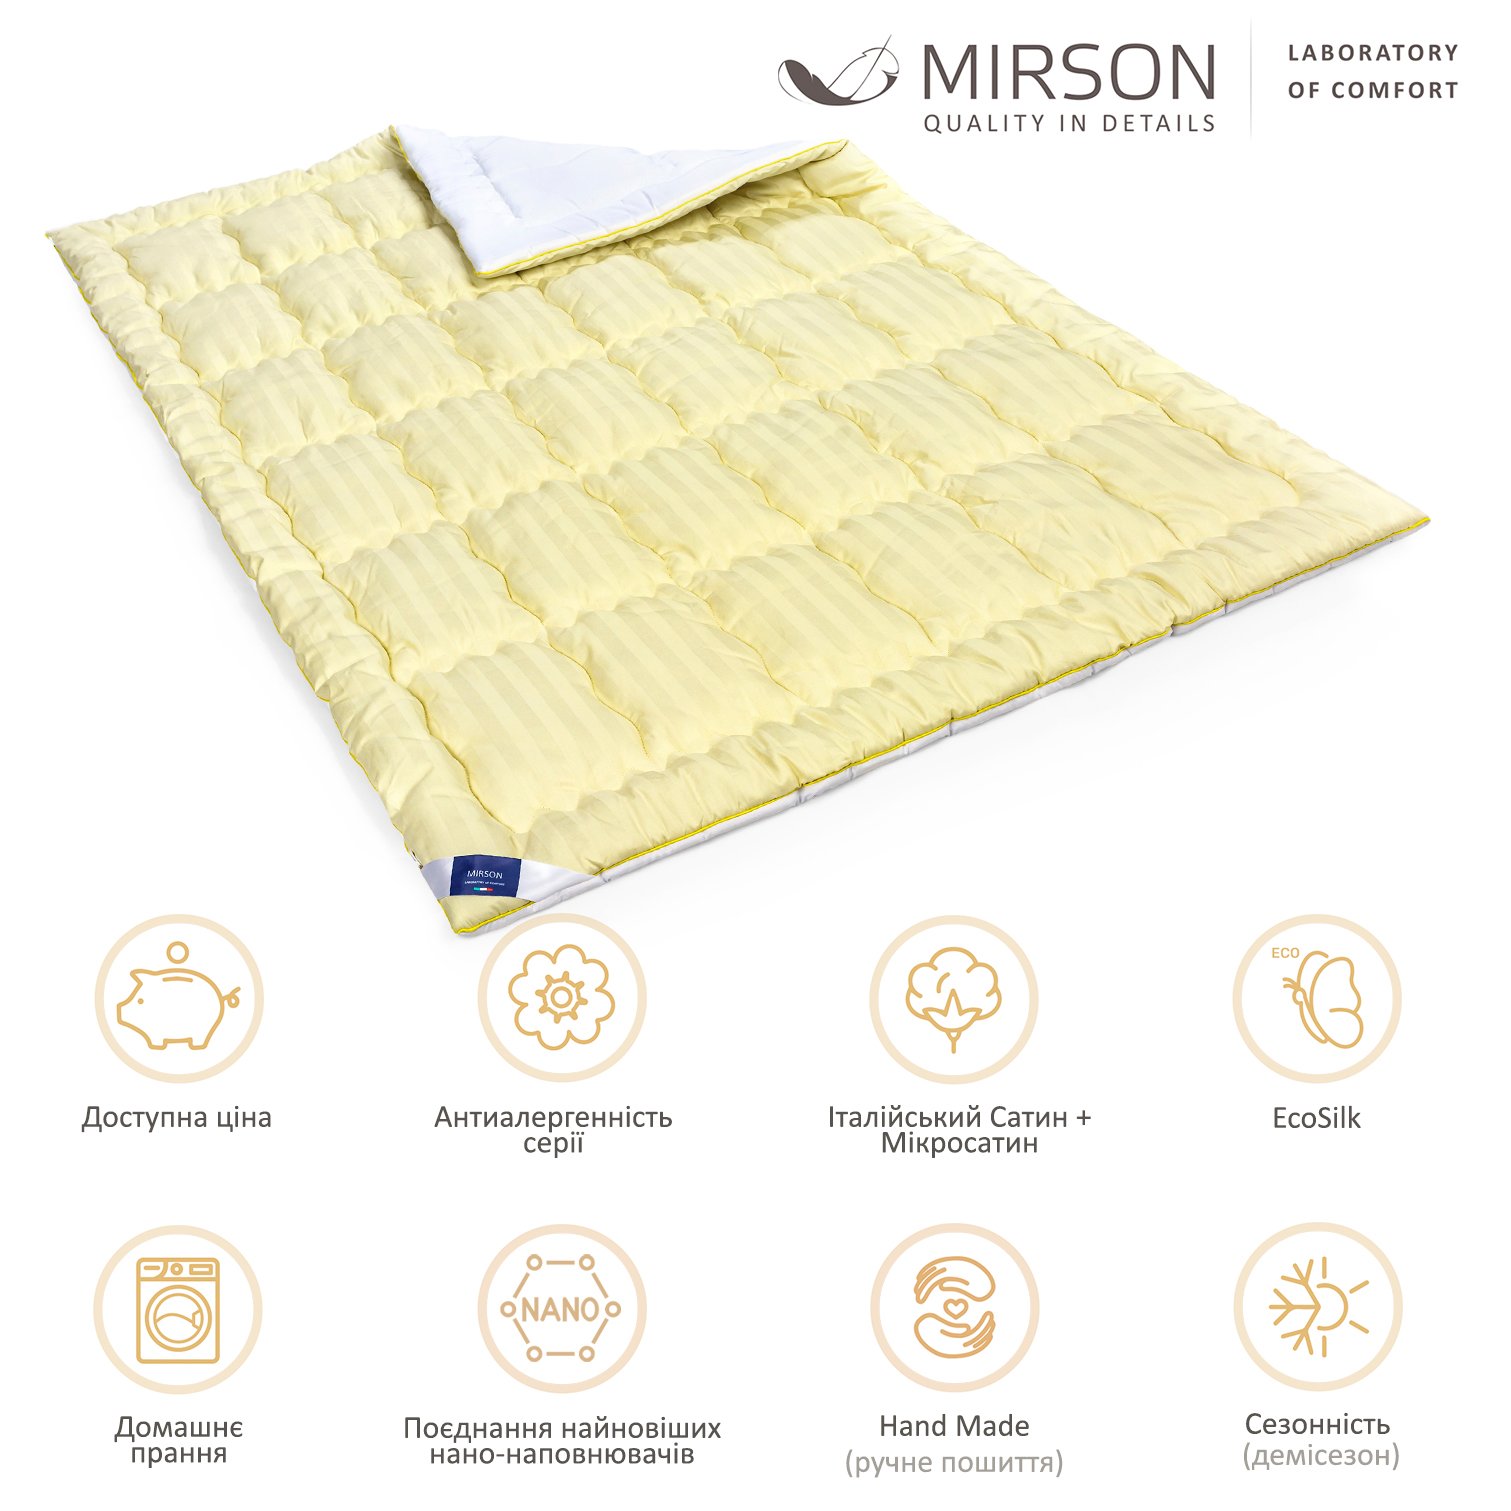 Одеяло антиаллергенное MirSon Carmela Hand Made EcoSilk №0552, демисезонное, 155x215 см, желто-белое - фото 6